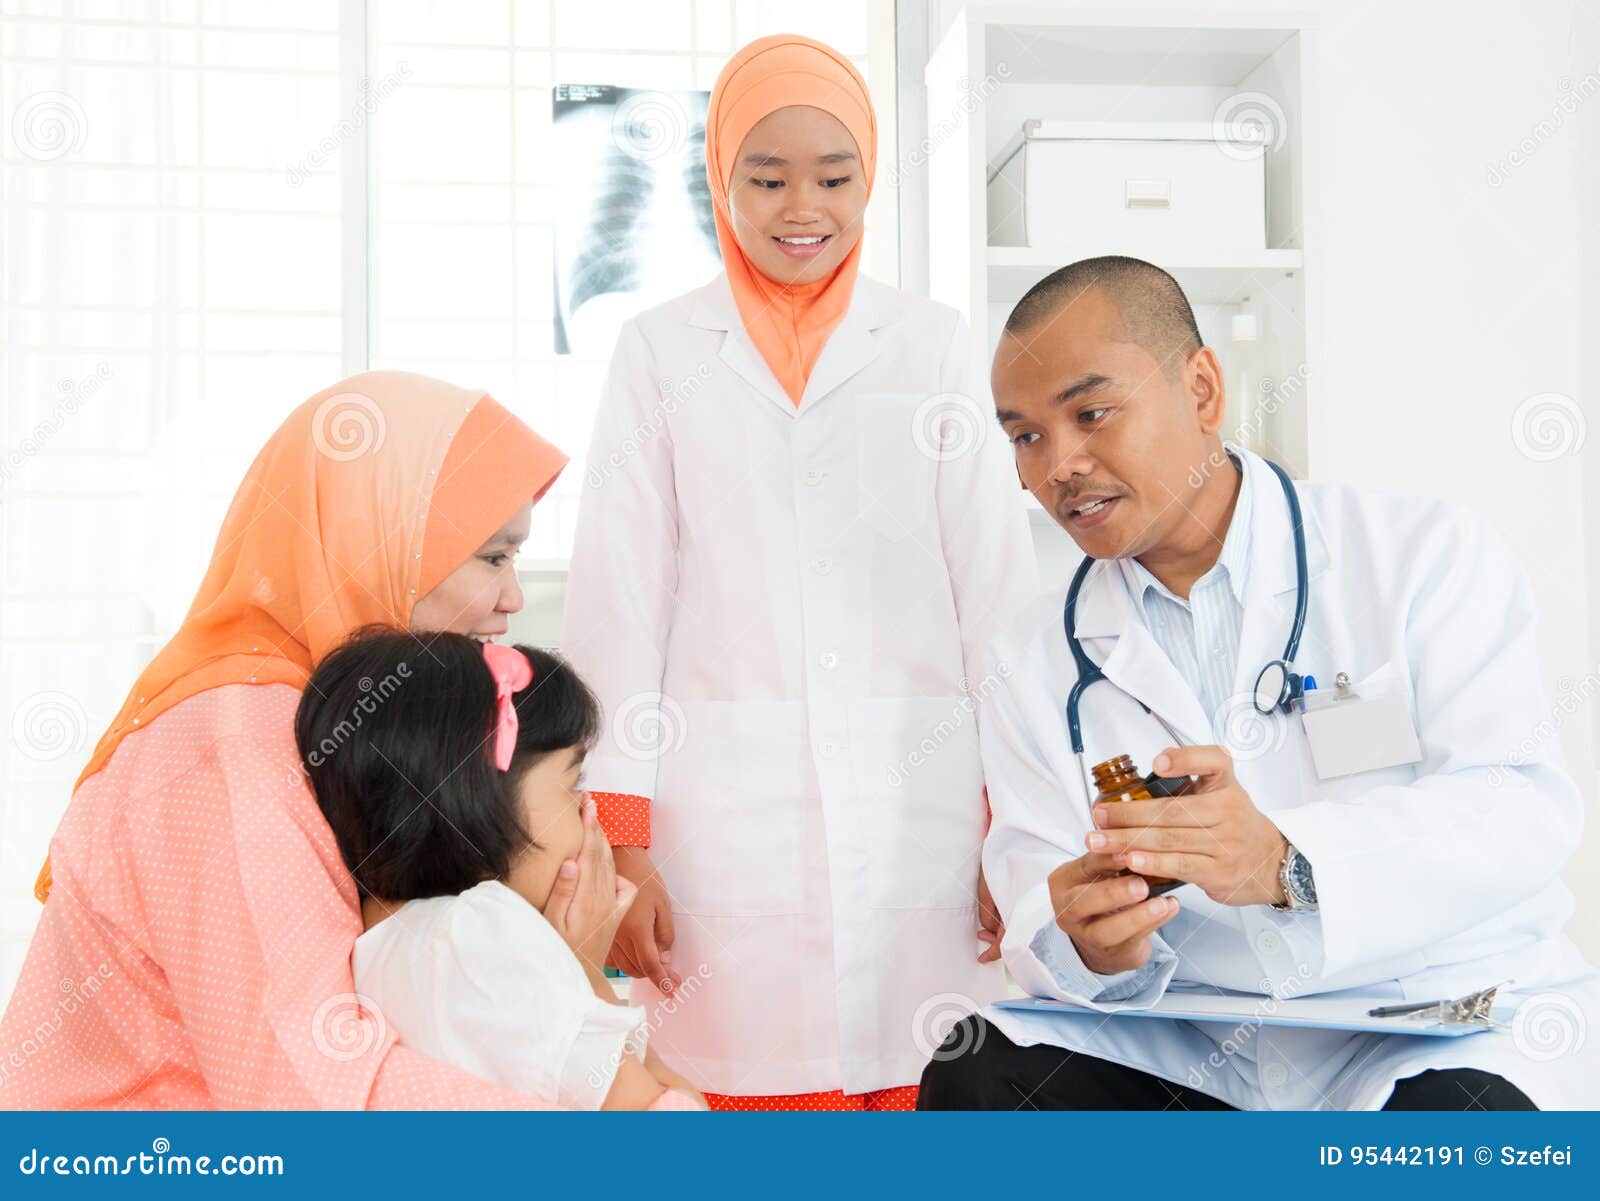 Врач мусульман. Врач мусульманин. Медицина дети мусульм. Мусульманка врач. Мусульмане на приеме у врача.